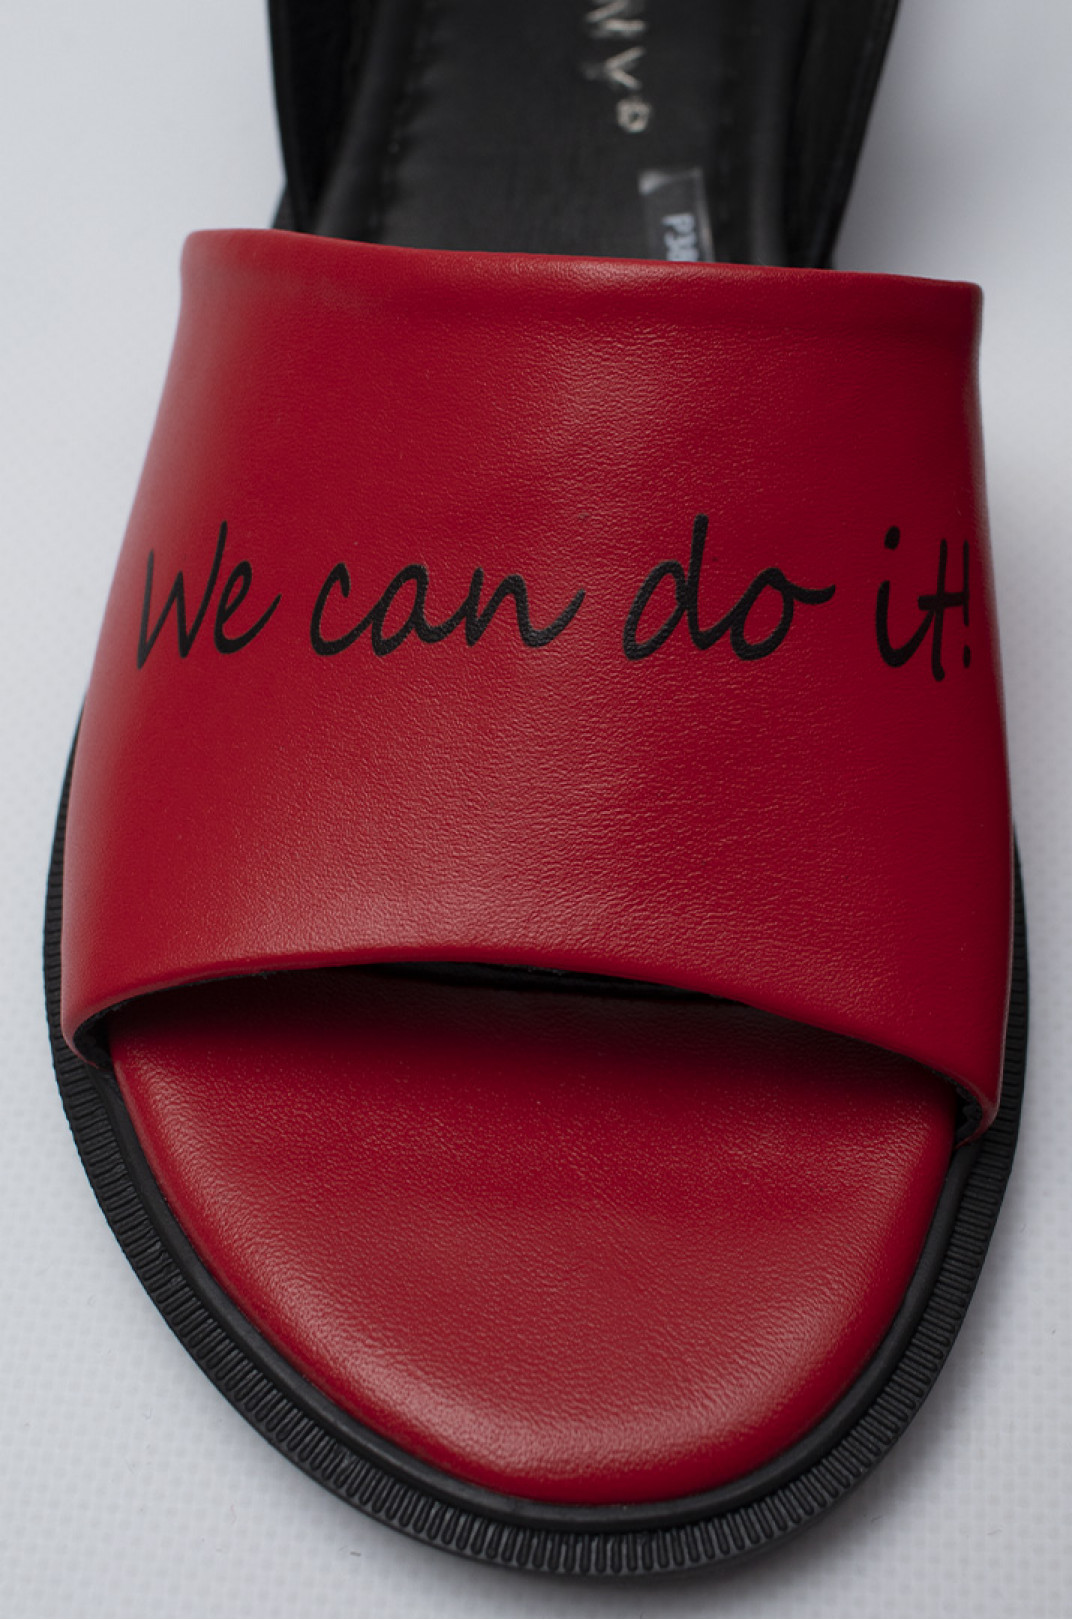 Красные кожаные босоножки с надписью "We can do it!" больших размеров